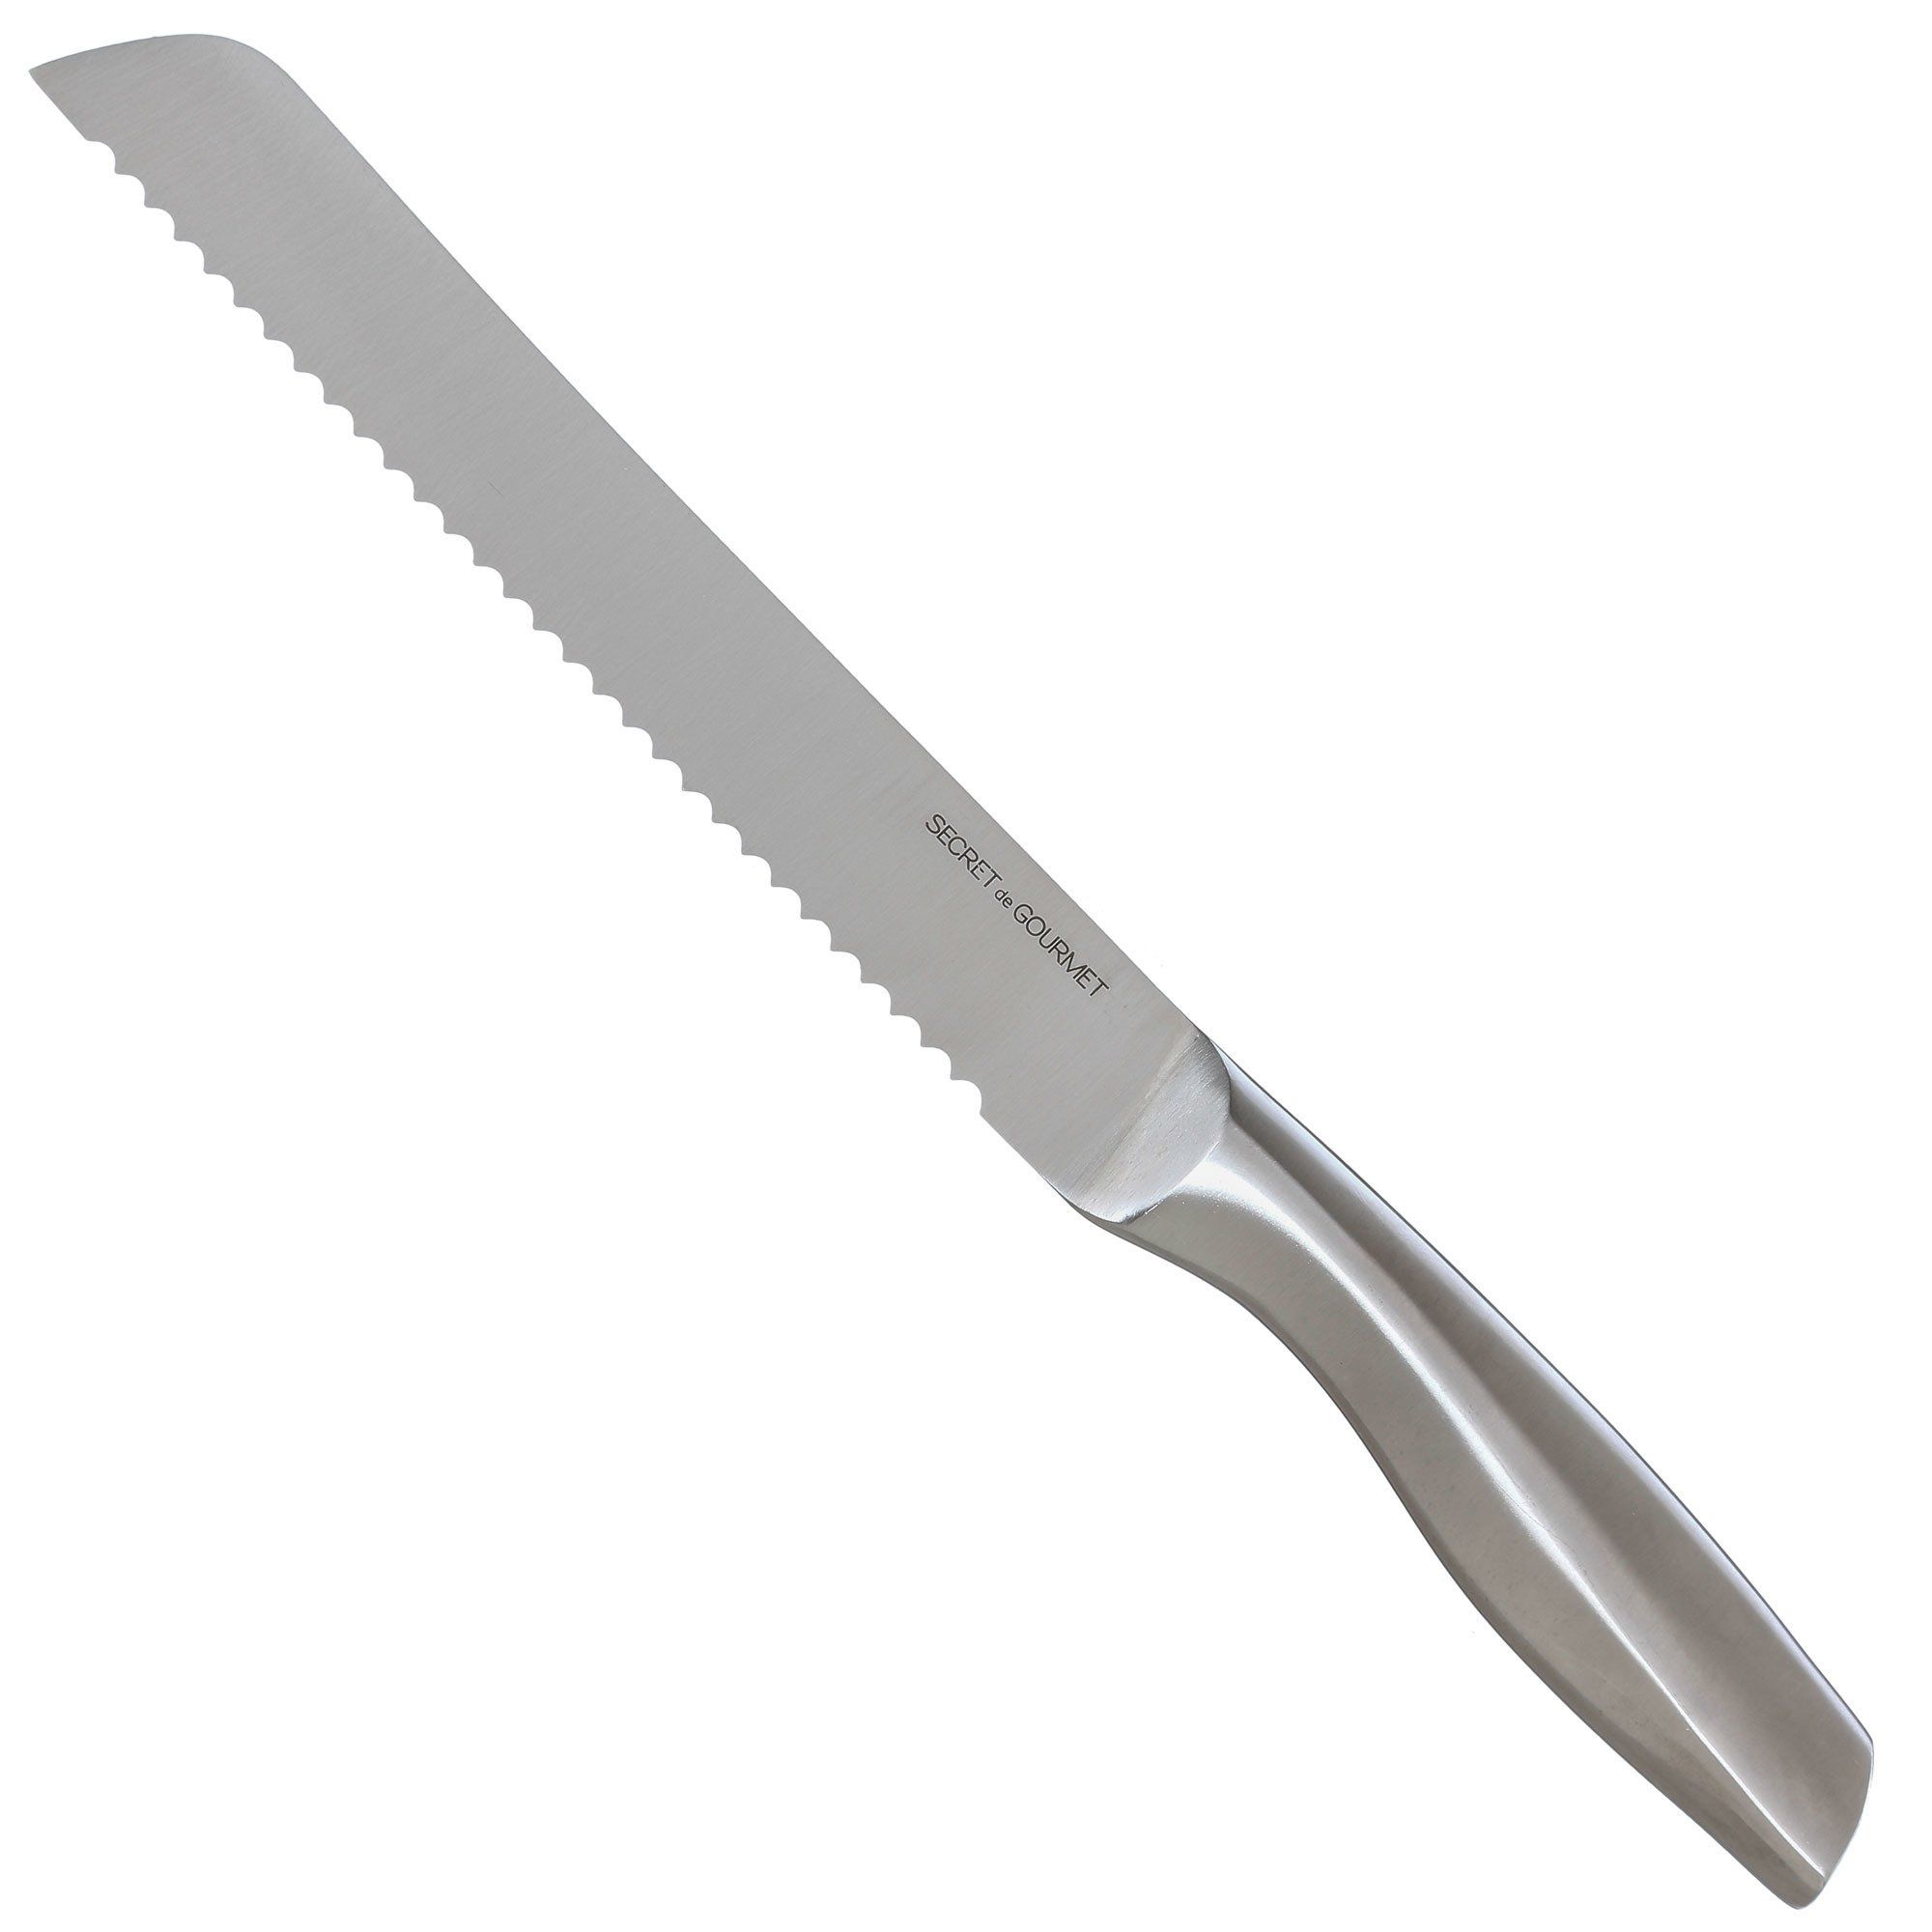 Secret de Gourmet Nůž na chléb z nerezové oceli se zubatou čepelí, profesionální řezačka na chléb - EMAKO.CZ s.r.o.